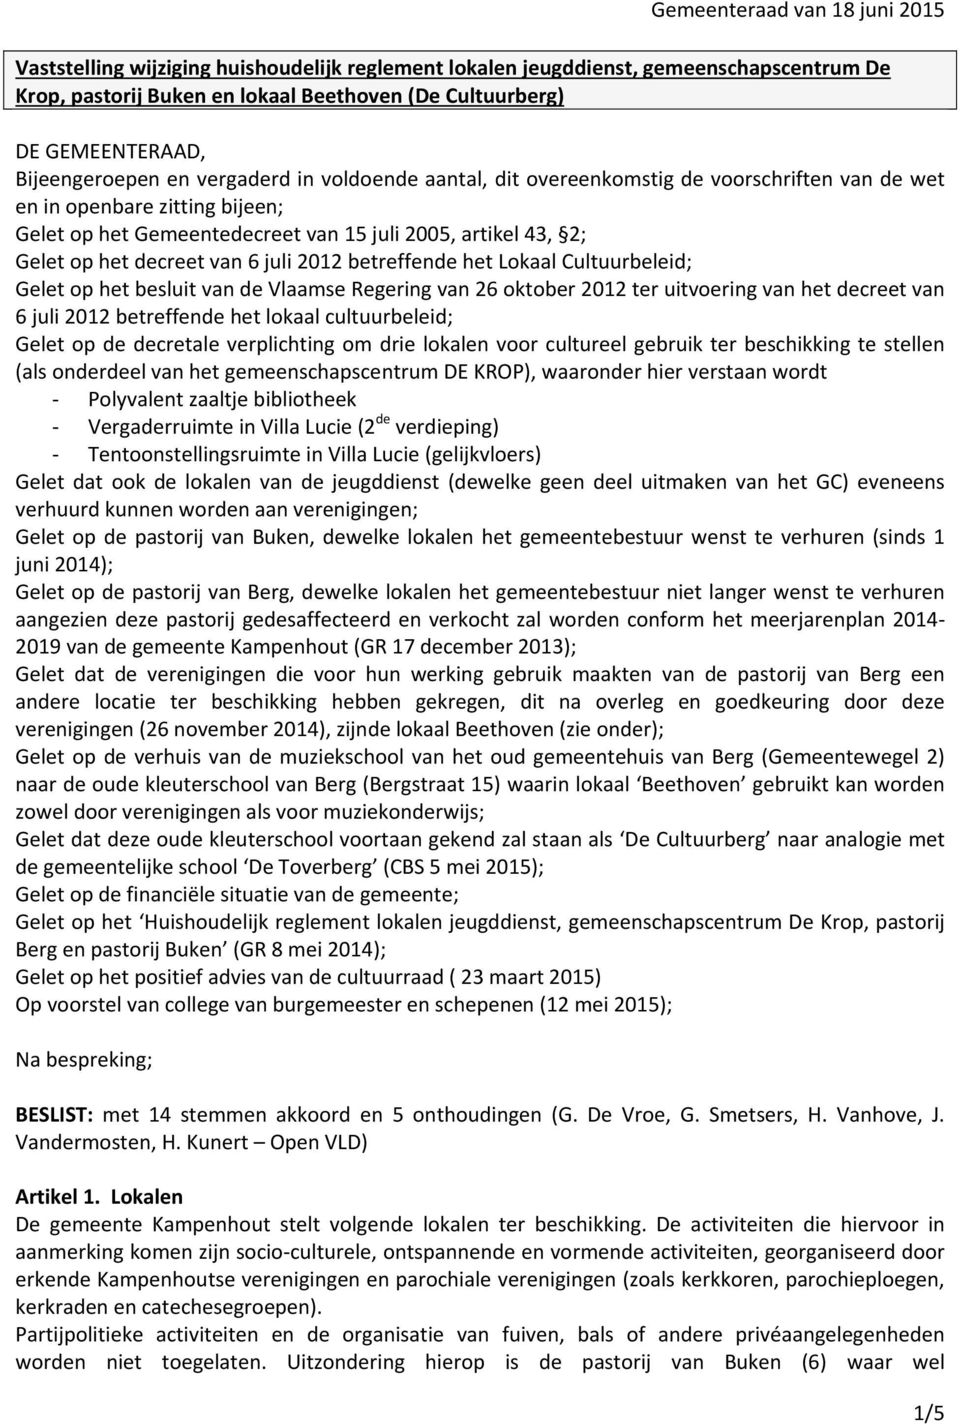 het decreet van 6 juli 2012 betreffende het Lokaal Cultuurbeleid; Gelet op het besluit van de Vlaamse Regering van 26 oktober 2012 ter uitvoering van het decreet van 6 juli 2012 betreffende het